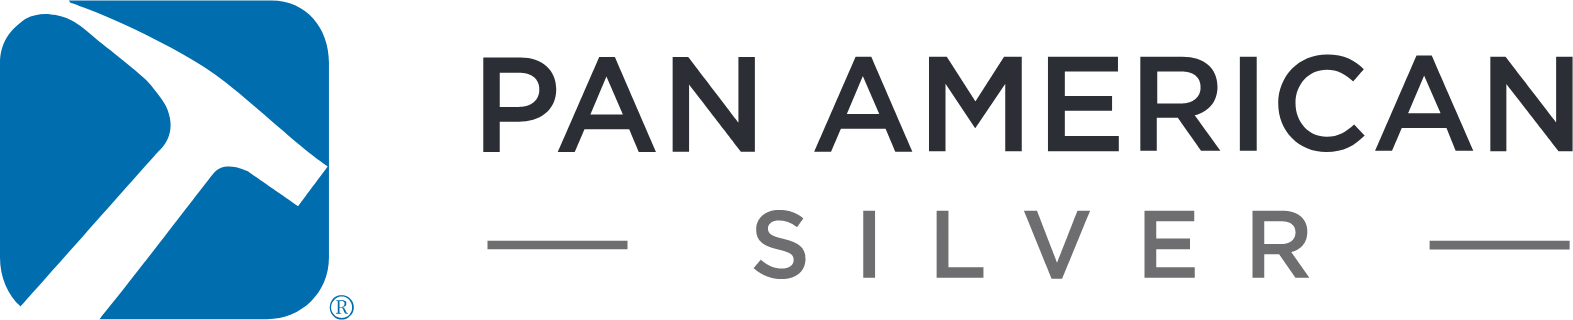 Pan American Silver
 logo large (transparent PNG)